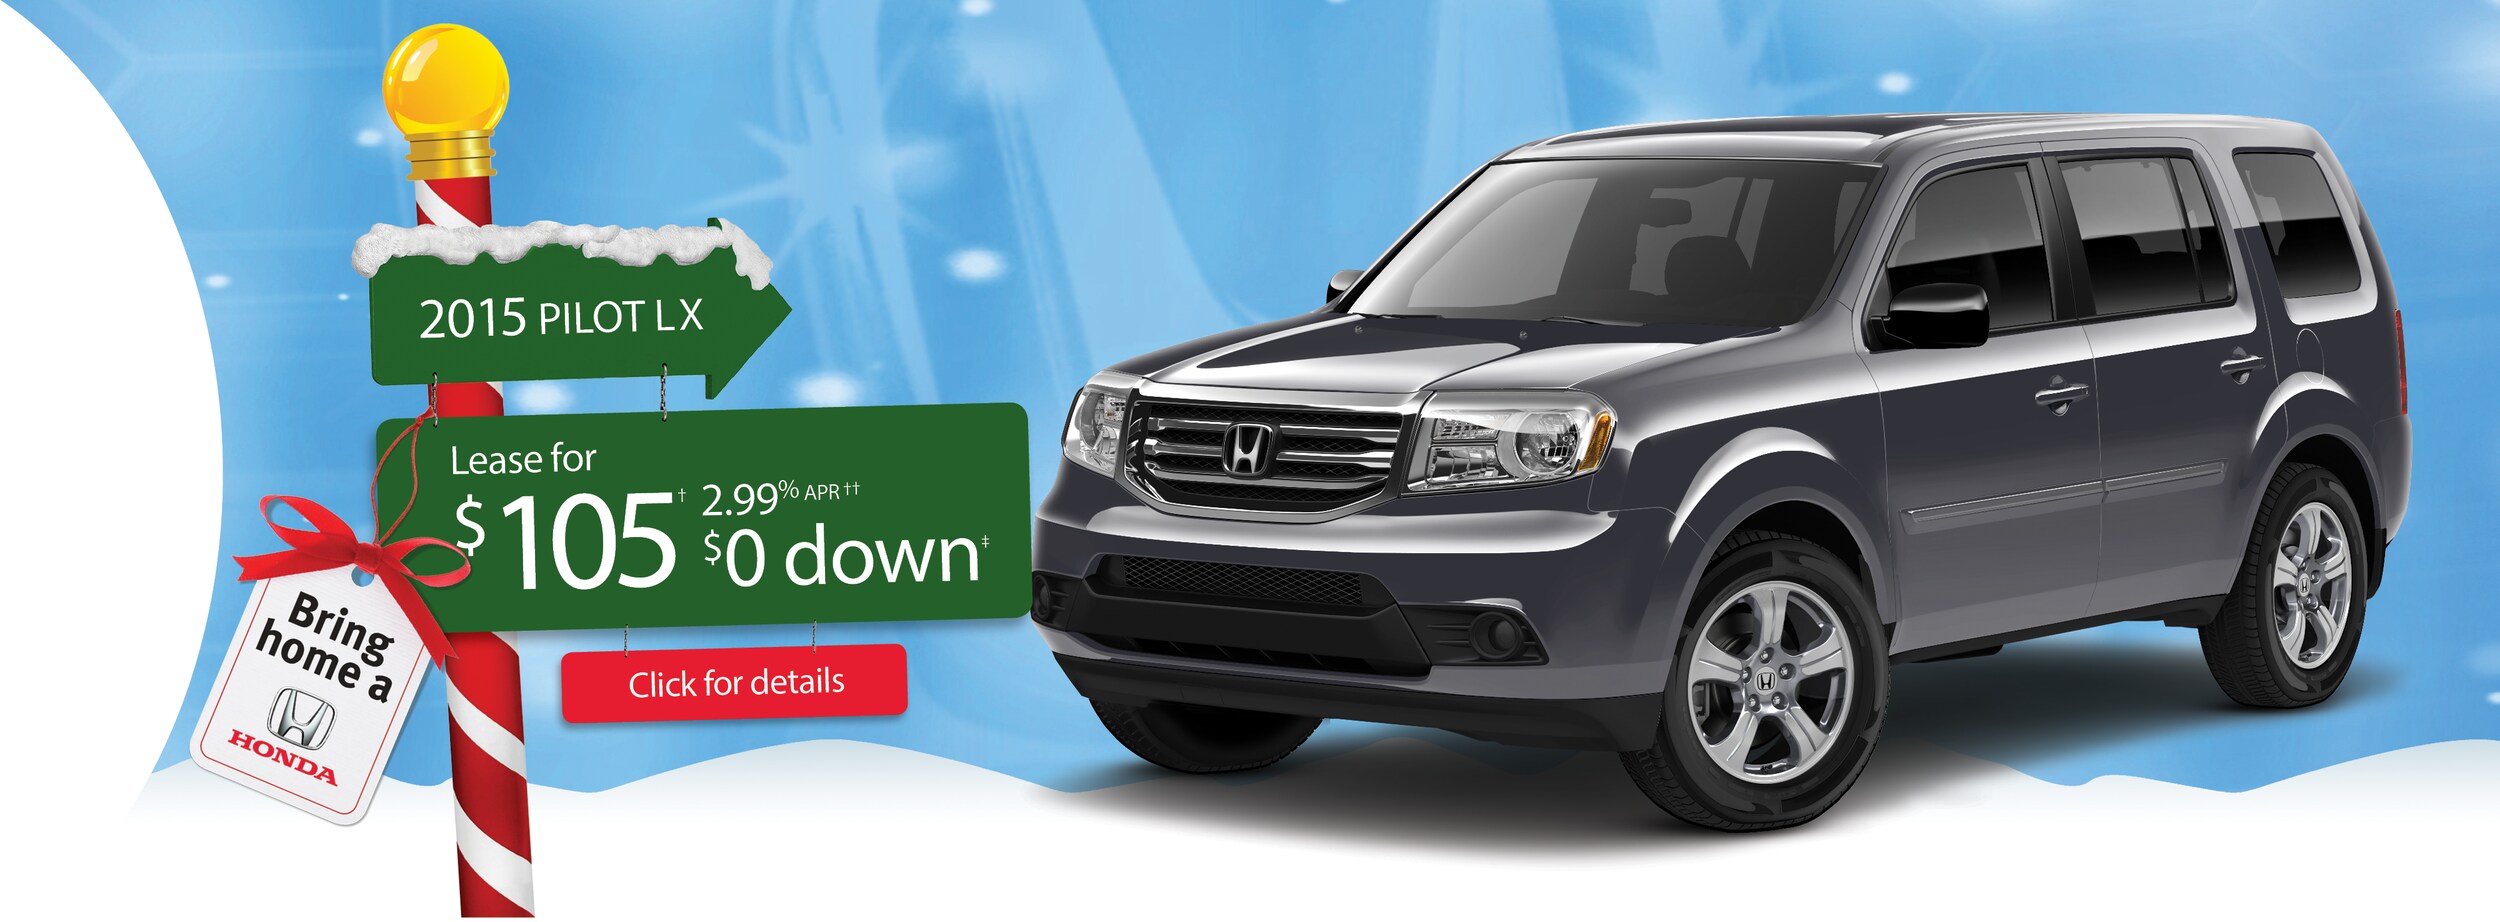 Honda dealership kingsway vancouver #3